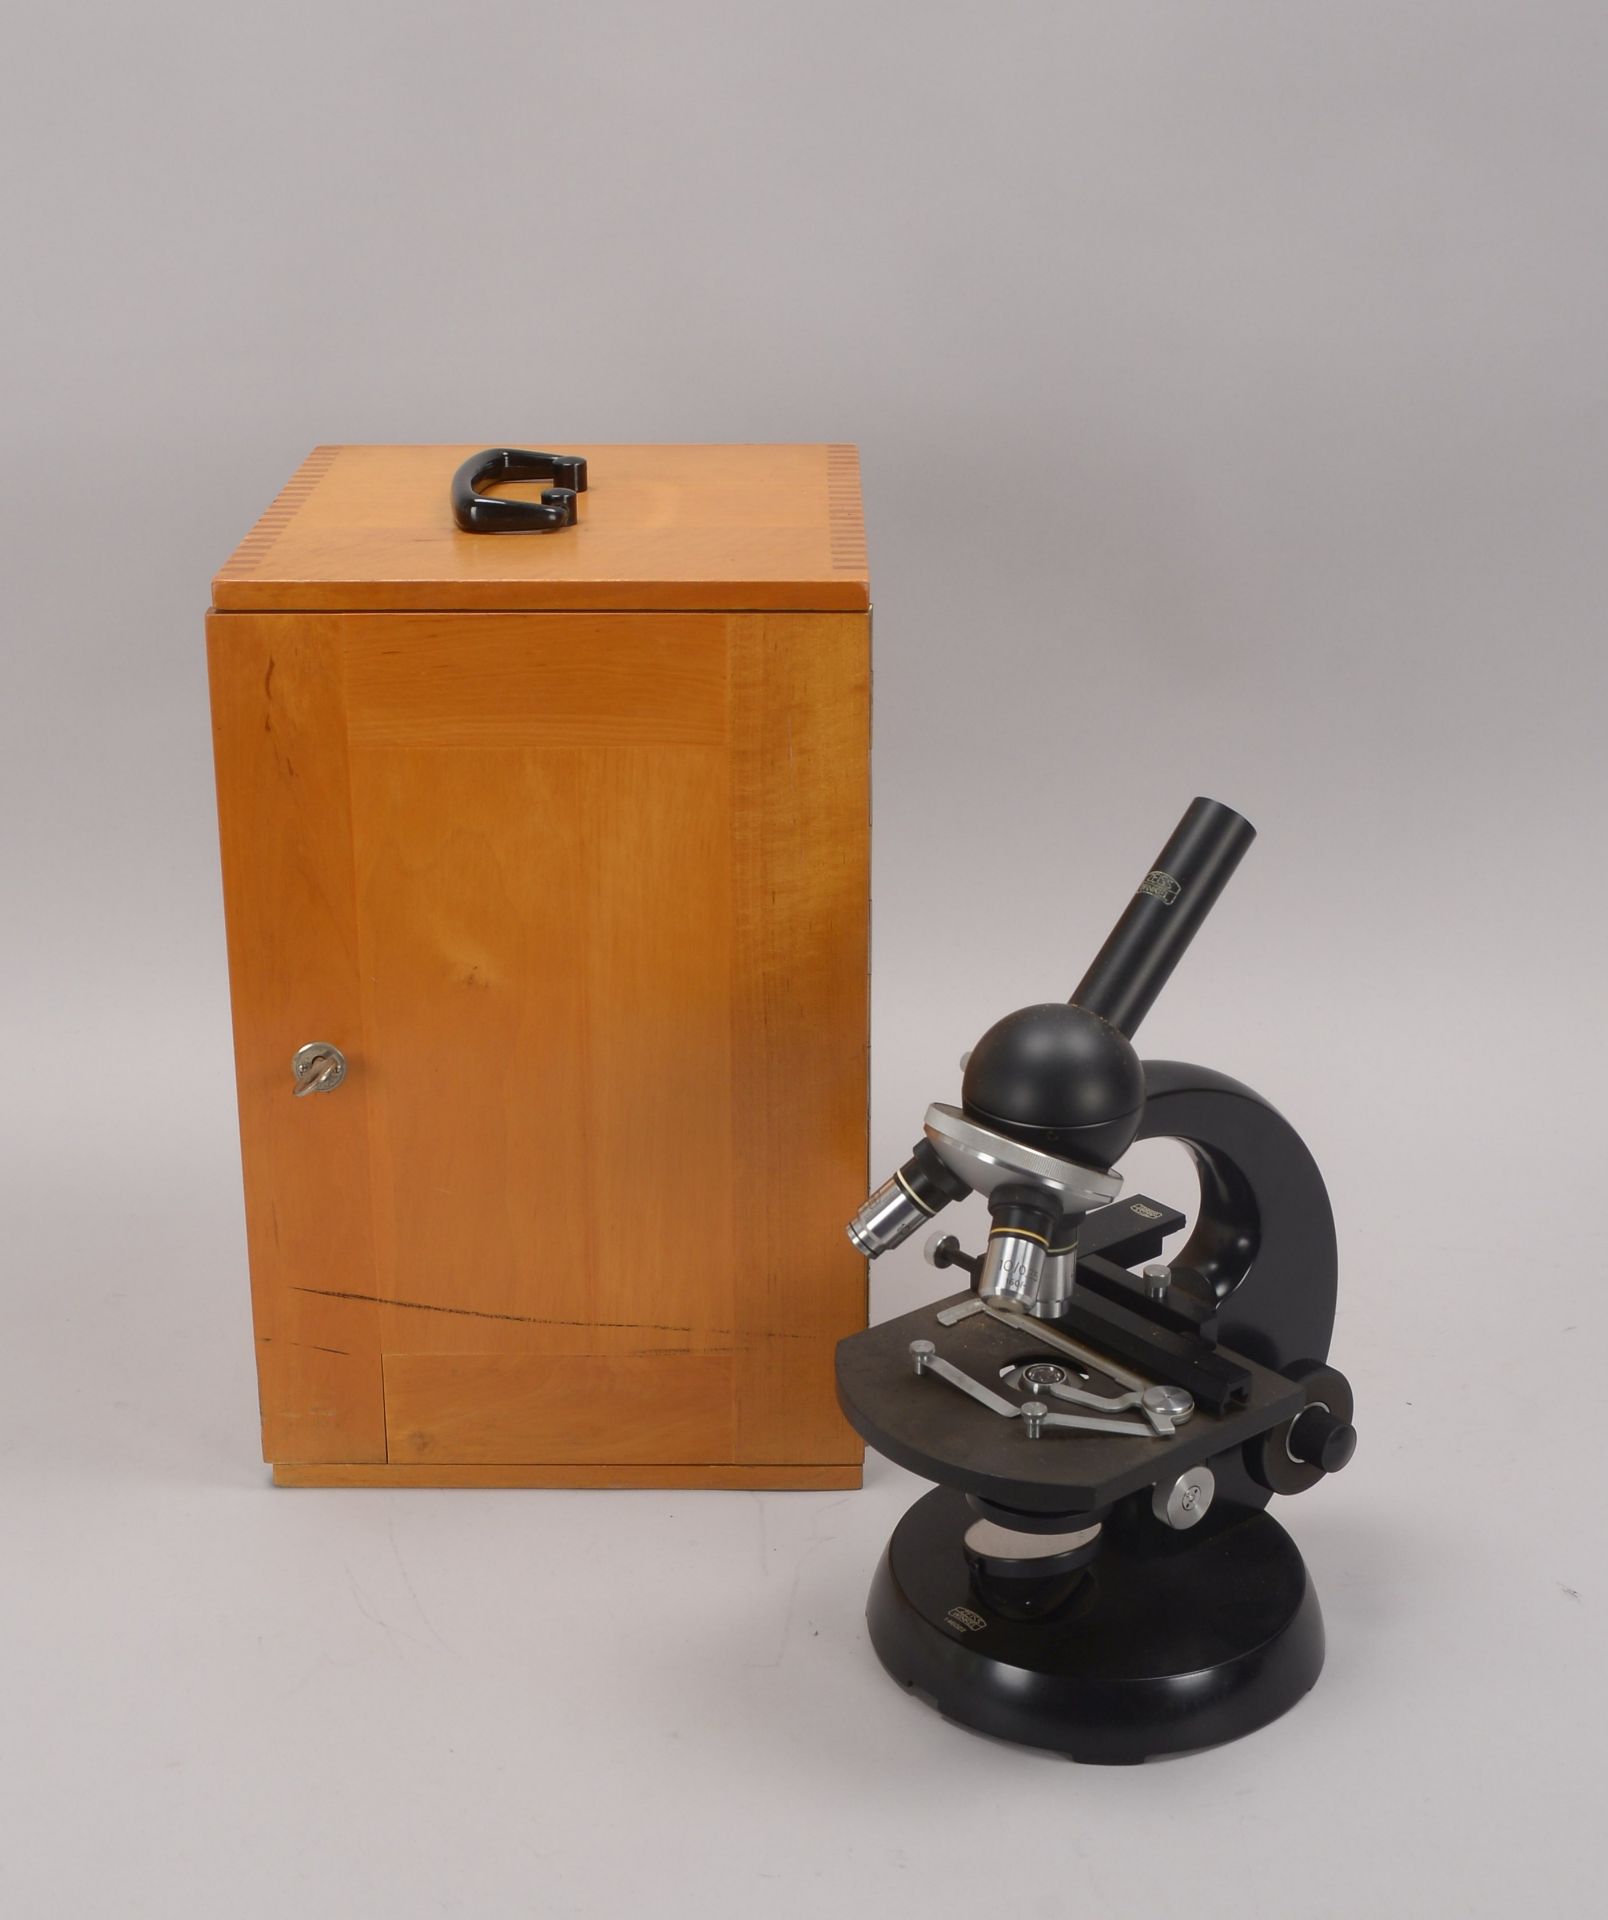 Mikroskop, Zeiss 'Winkel', Nr. '233975', mit verschiedenen Okularen, in Holzkiste - Schlüssel anbei;